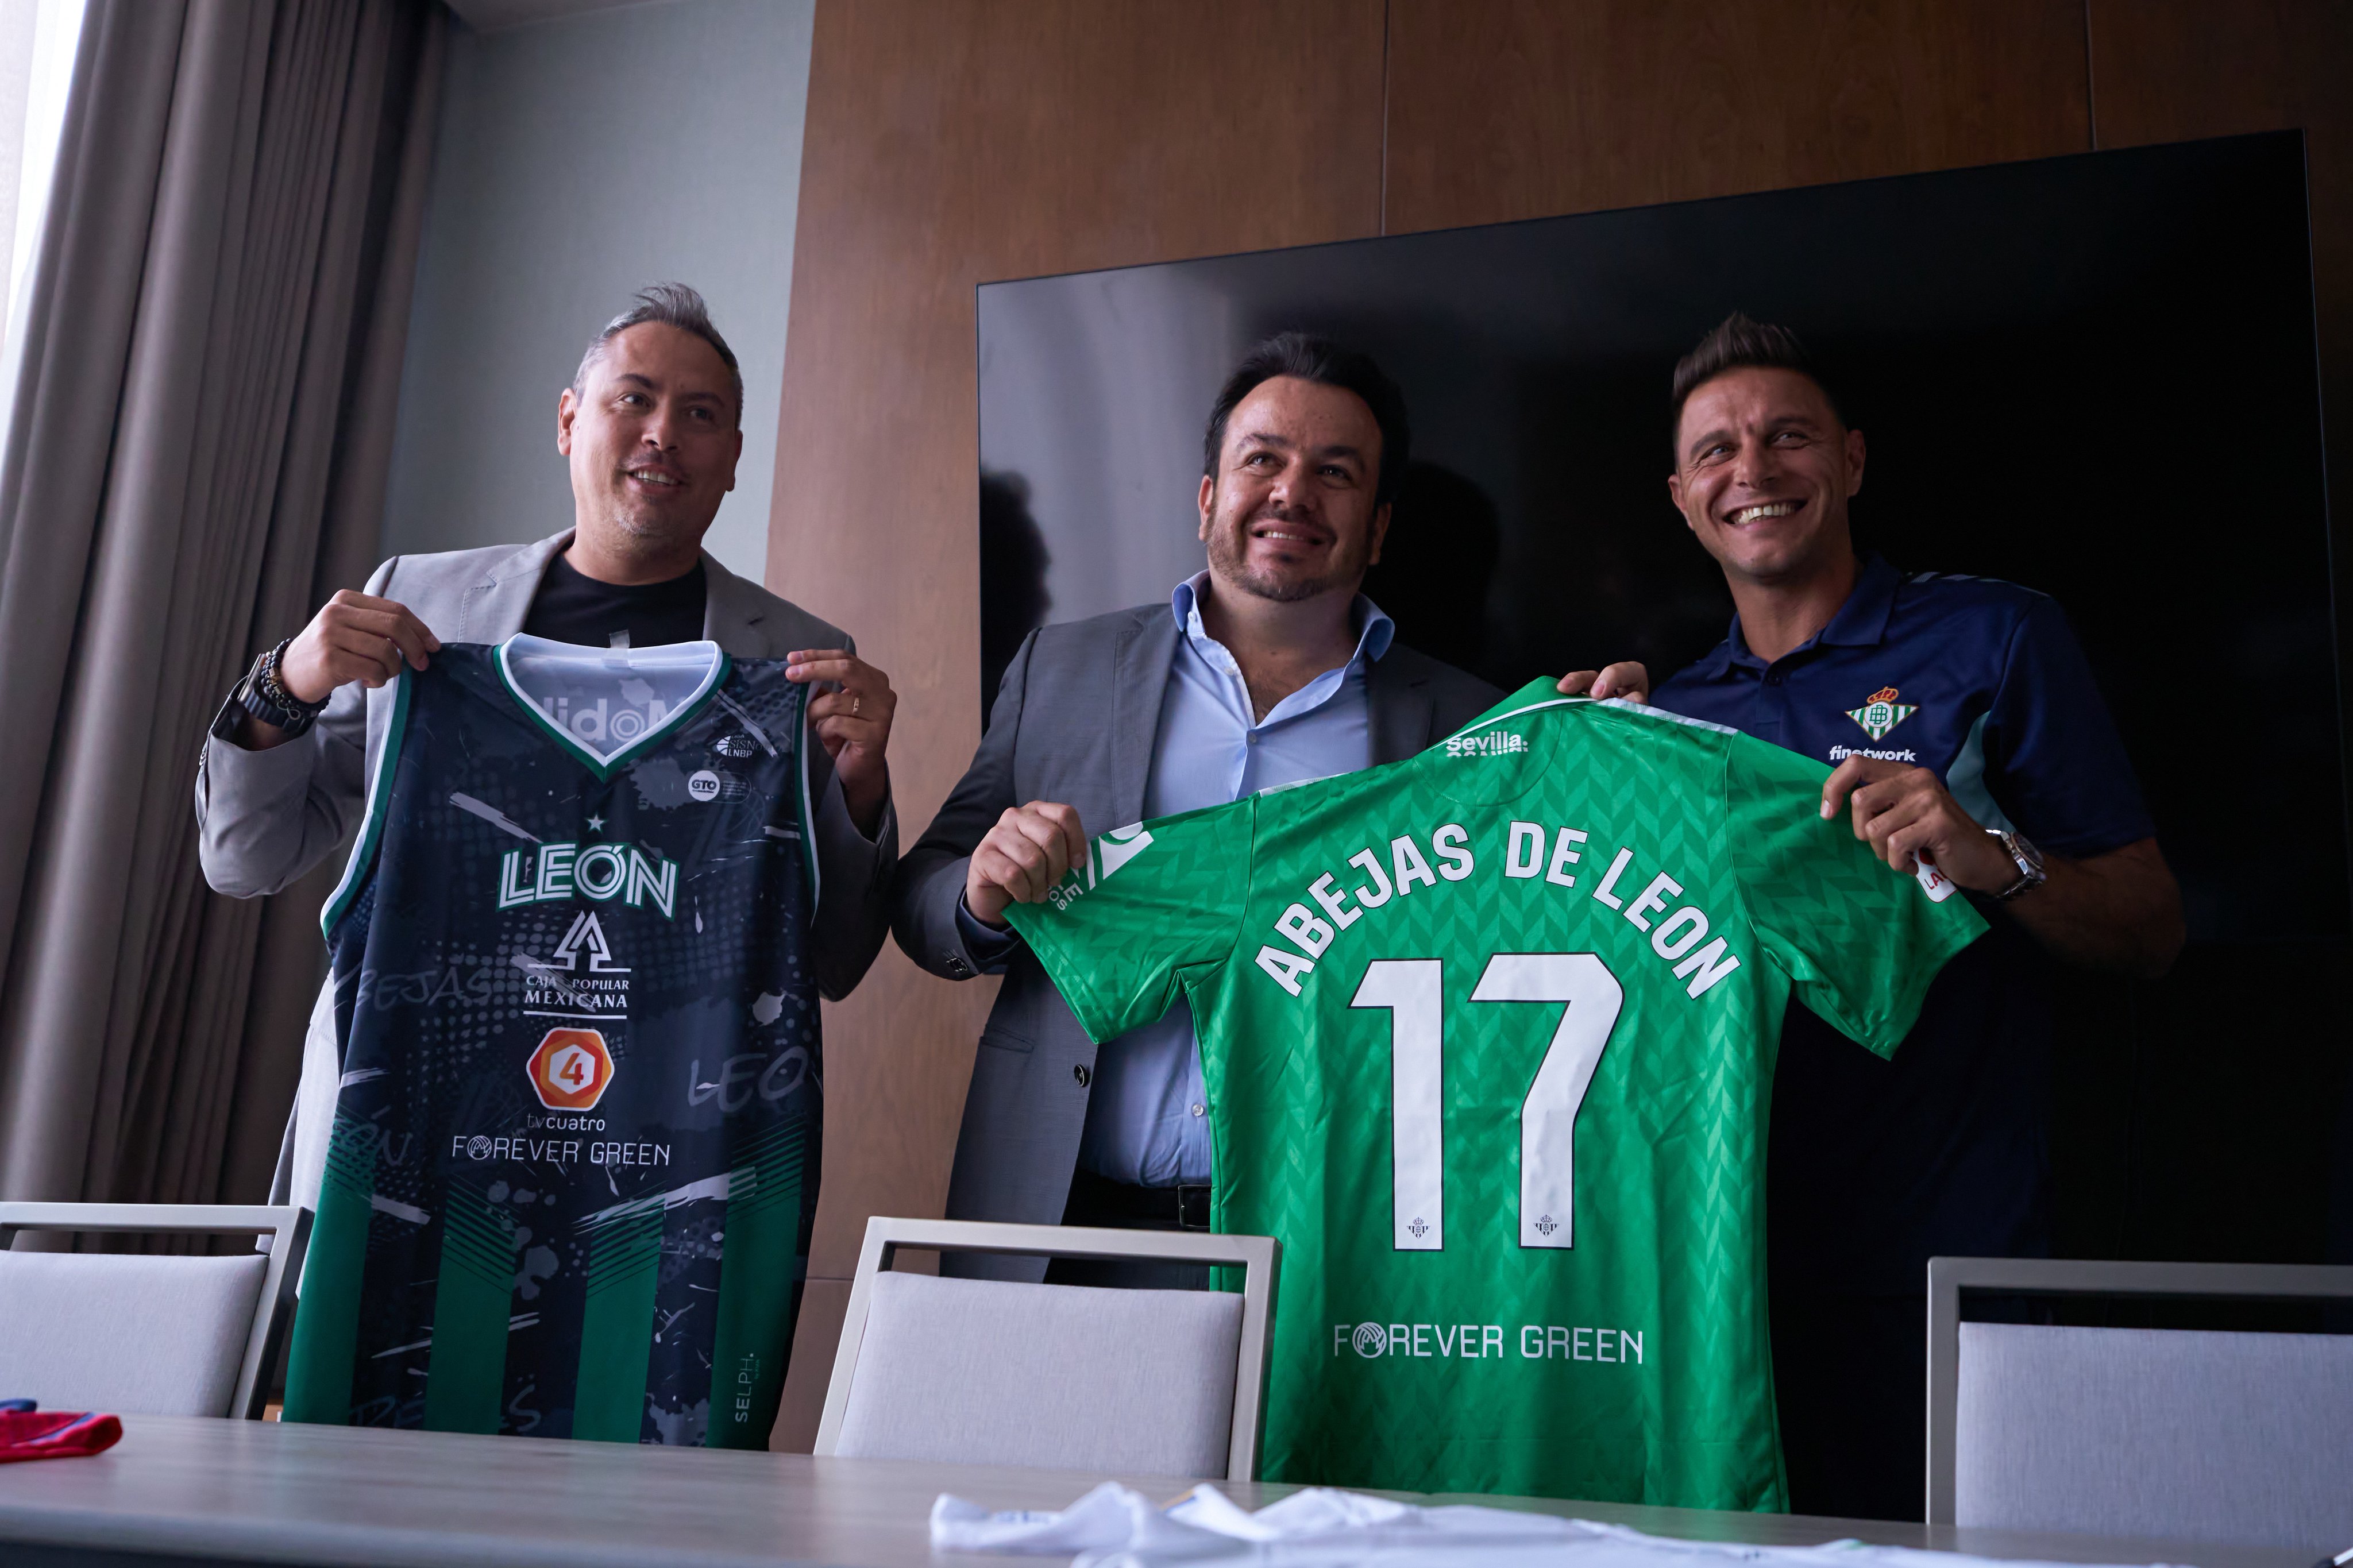 Encuentro en México entre el Real Betis y Abejas de León, equipos hermanados por su compromiso con el medio ambiente a través de Forever Green 